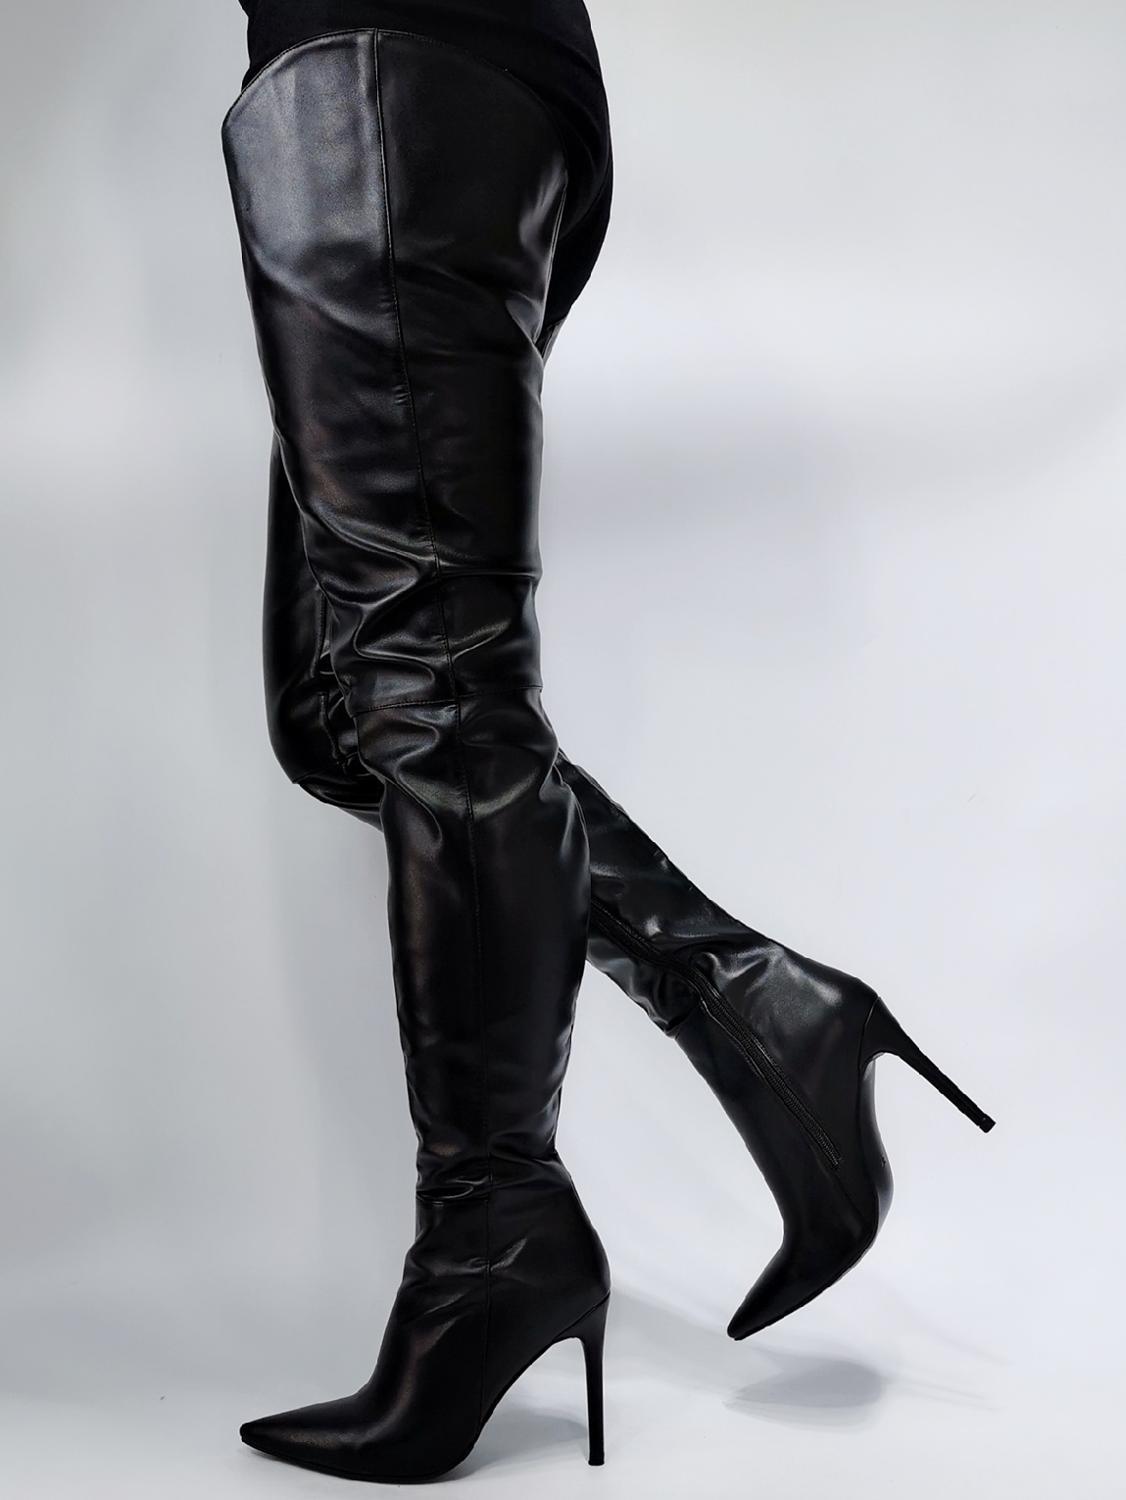 Изображение товара: Женские сапоги выше колена на высоком каблуке ASHIOFU, высокие сапоги для полюсного танца BFCM, вечерние клубные сапоги для вечеринки, модные зимние сапоги